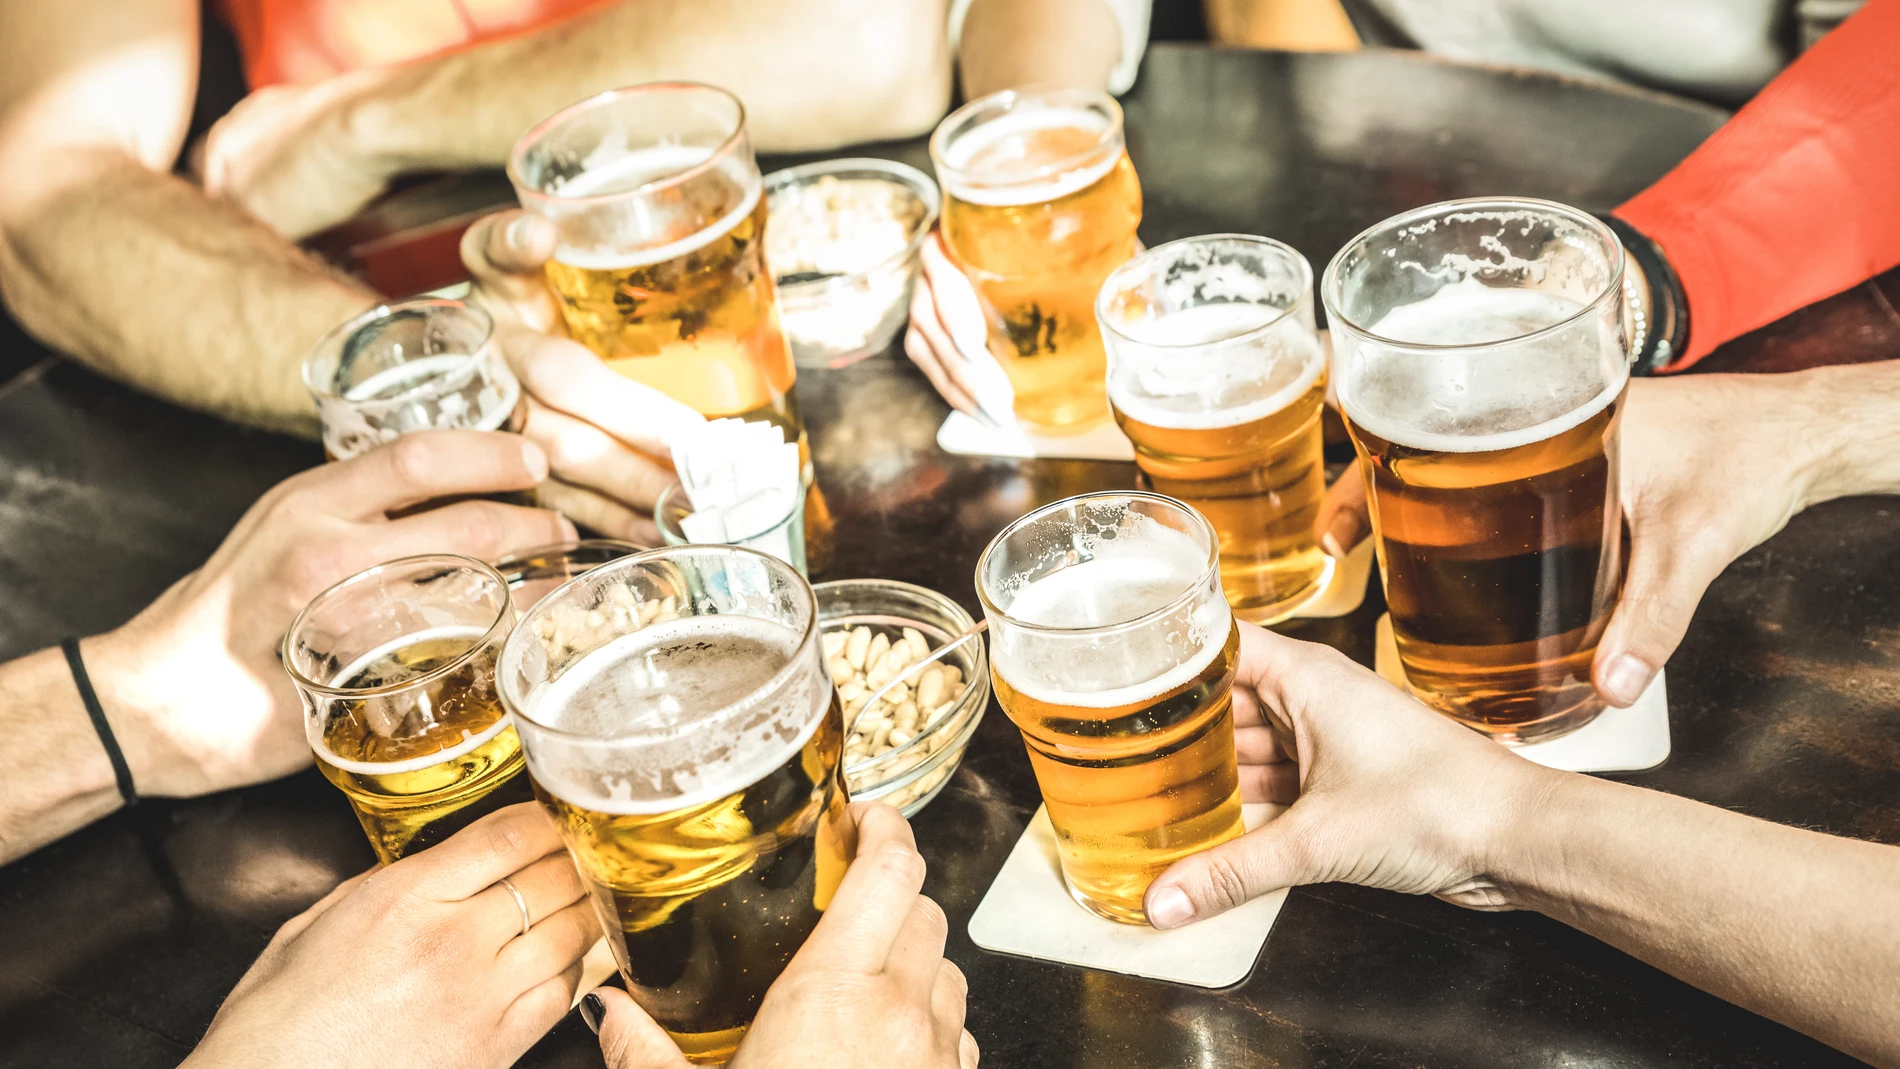 La cerveza es considerada como un superalimento por sus beneficios y nutrientes, pero se debe beber con moderación